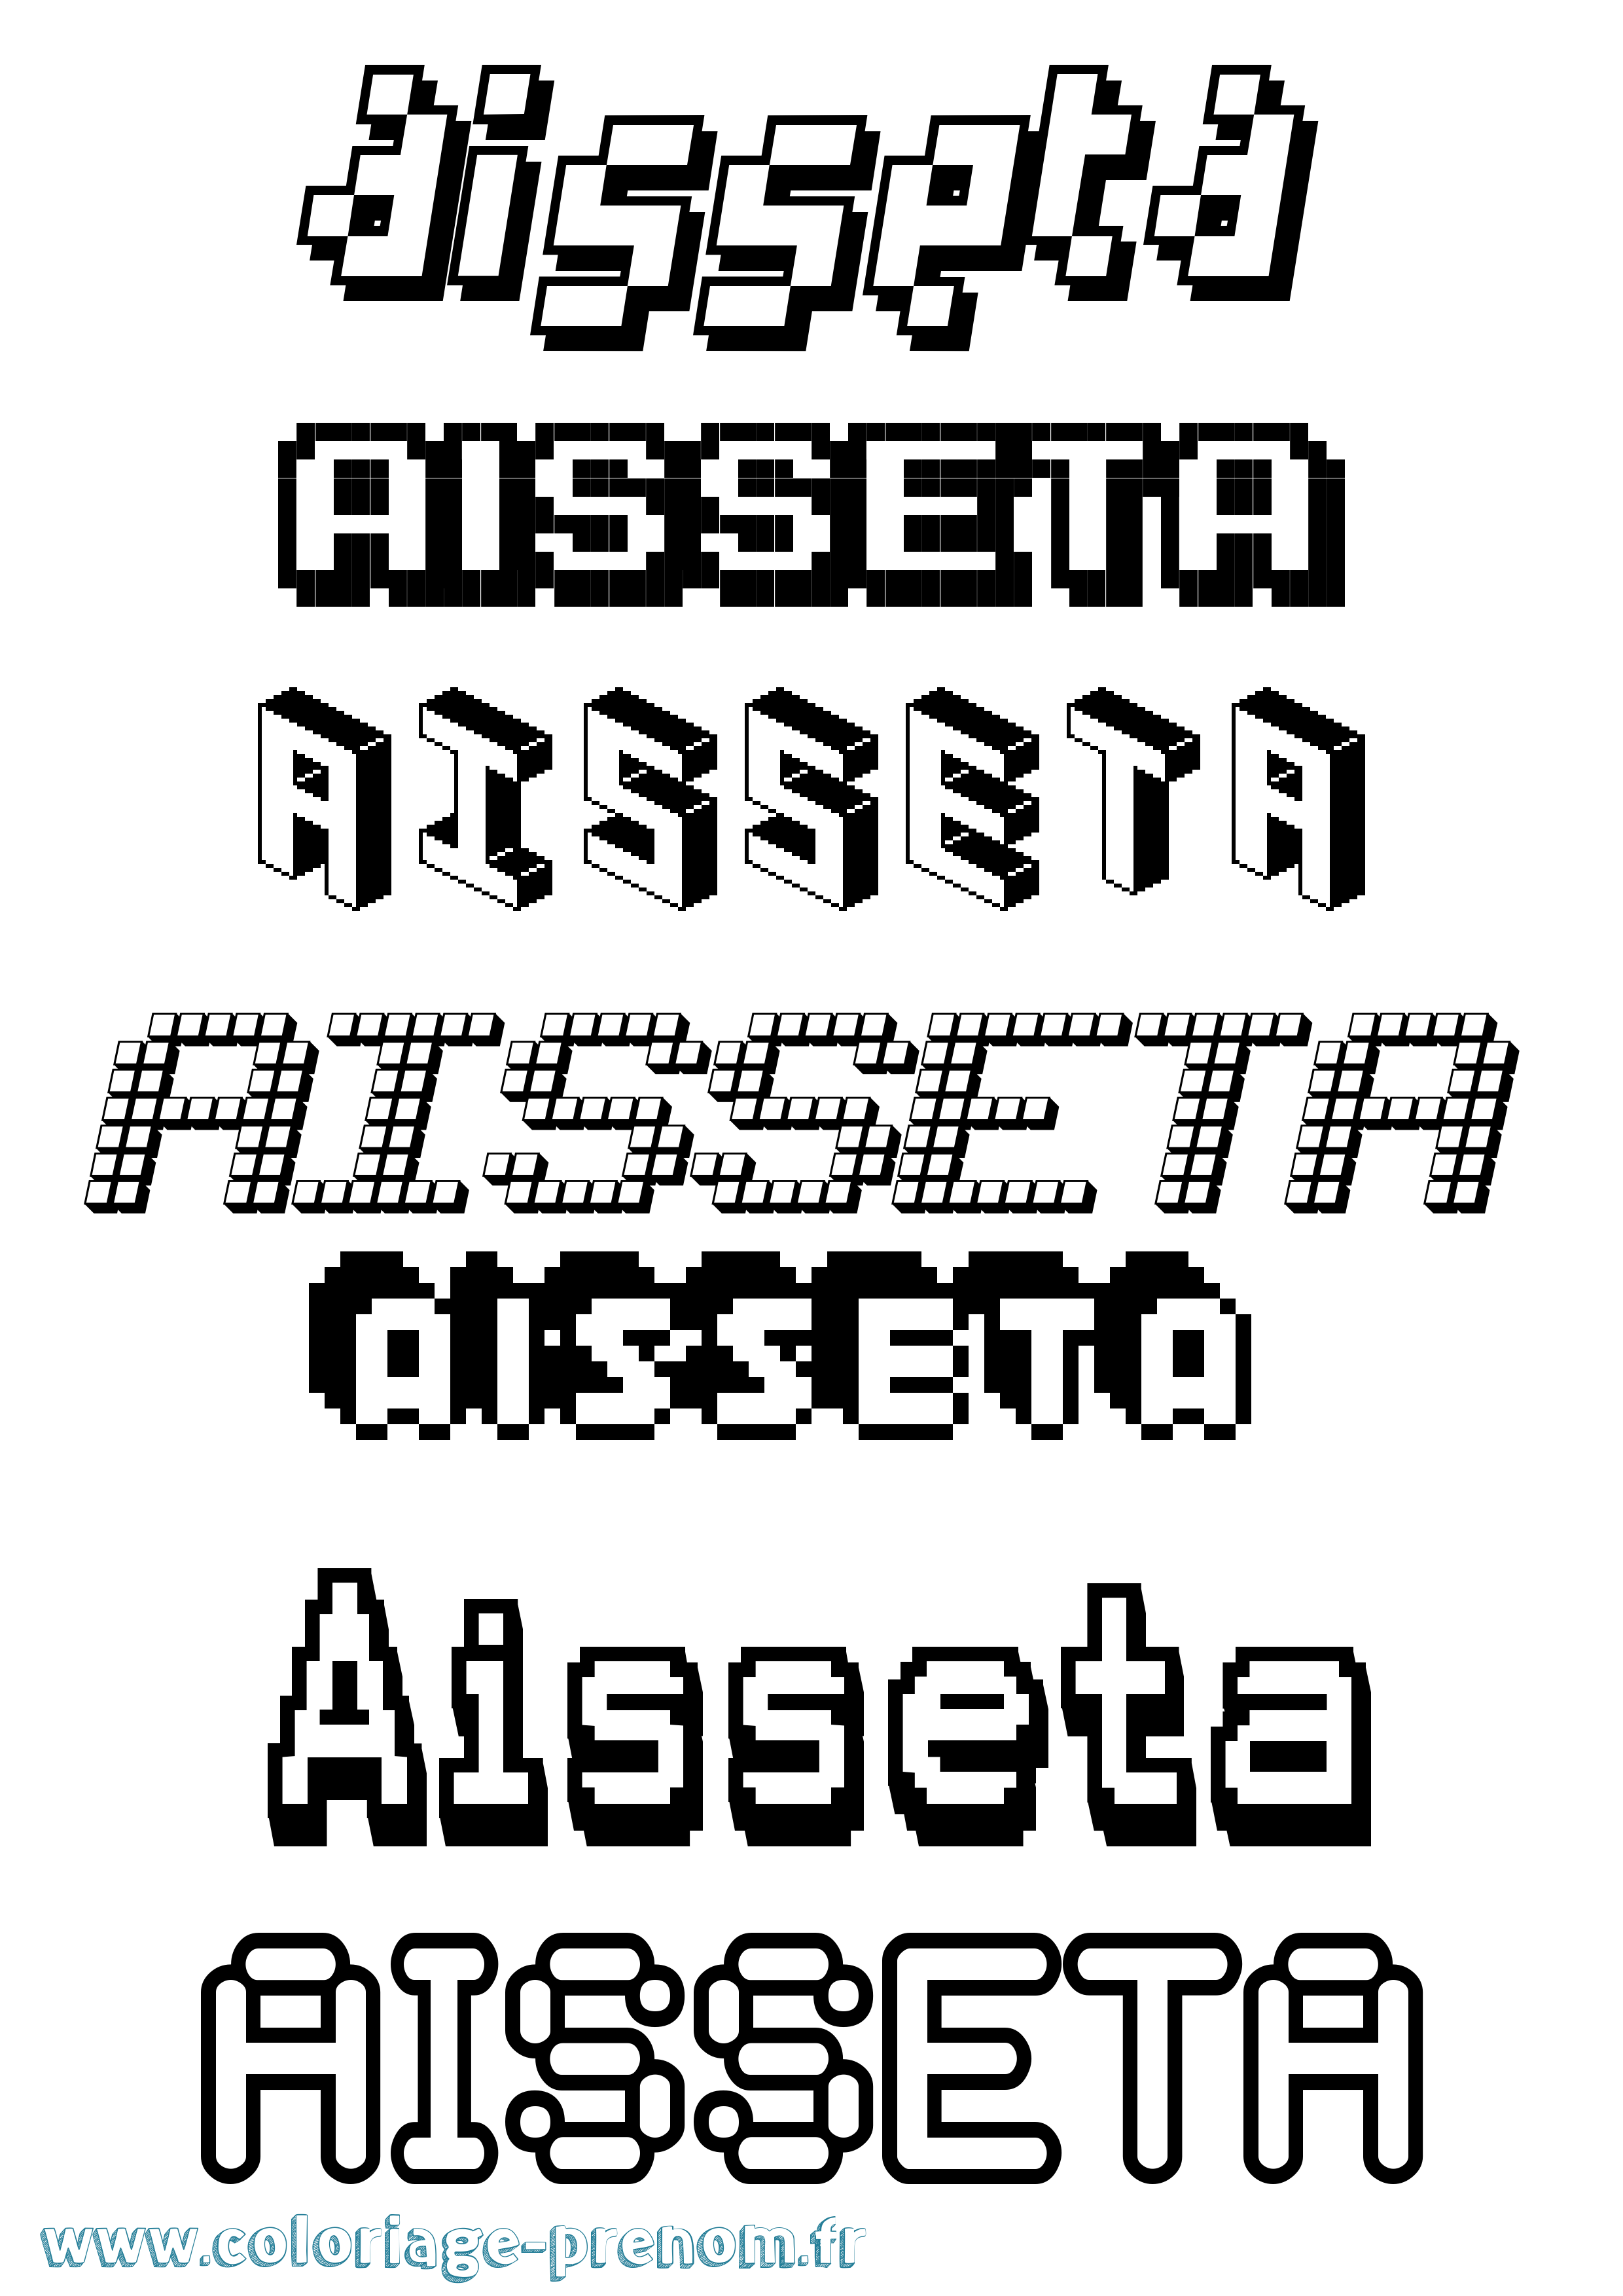 Coloriage prénom Aisseta Pixel